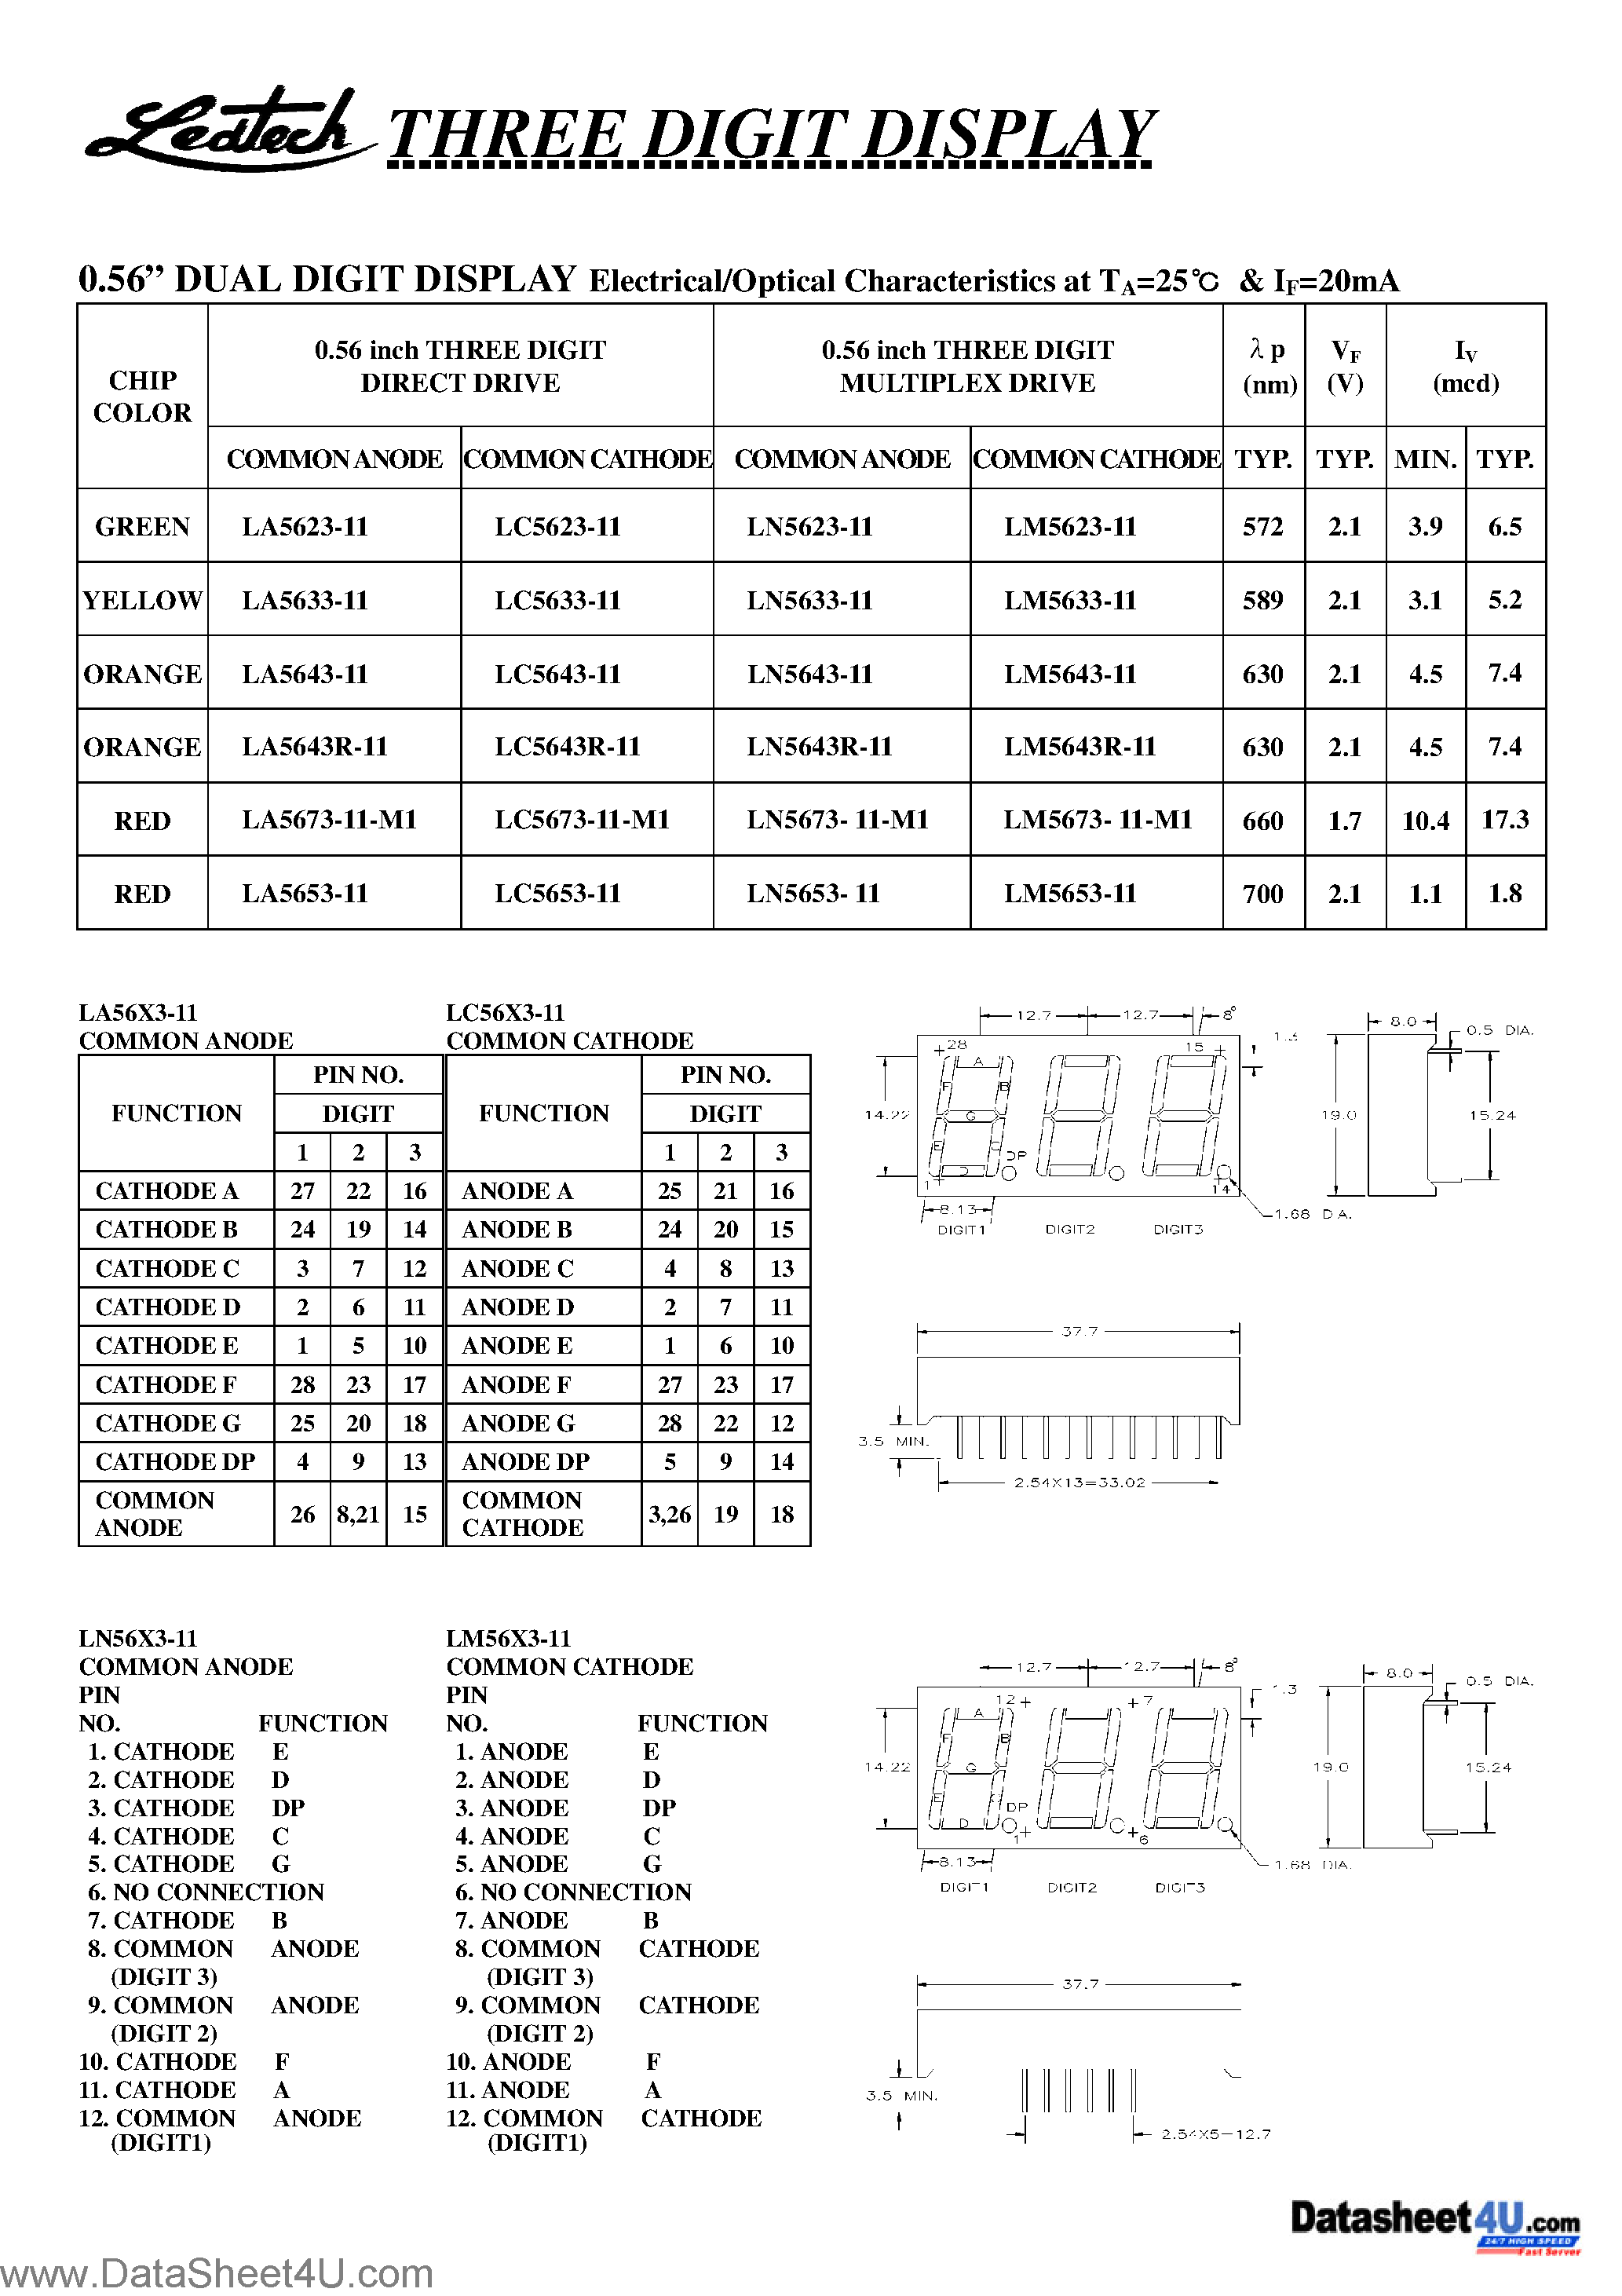 Datasheet LA5673-11 - 3-Digit Display page 1